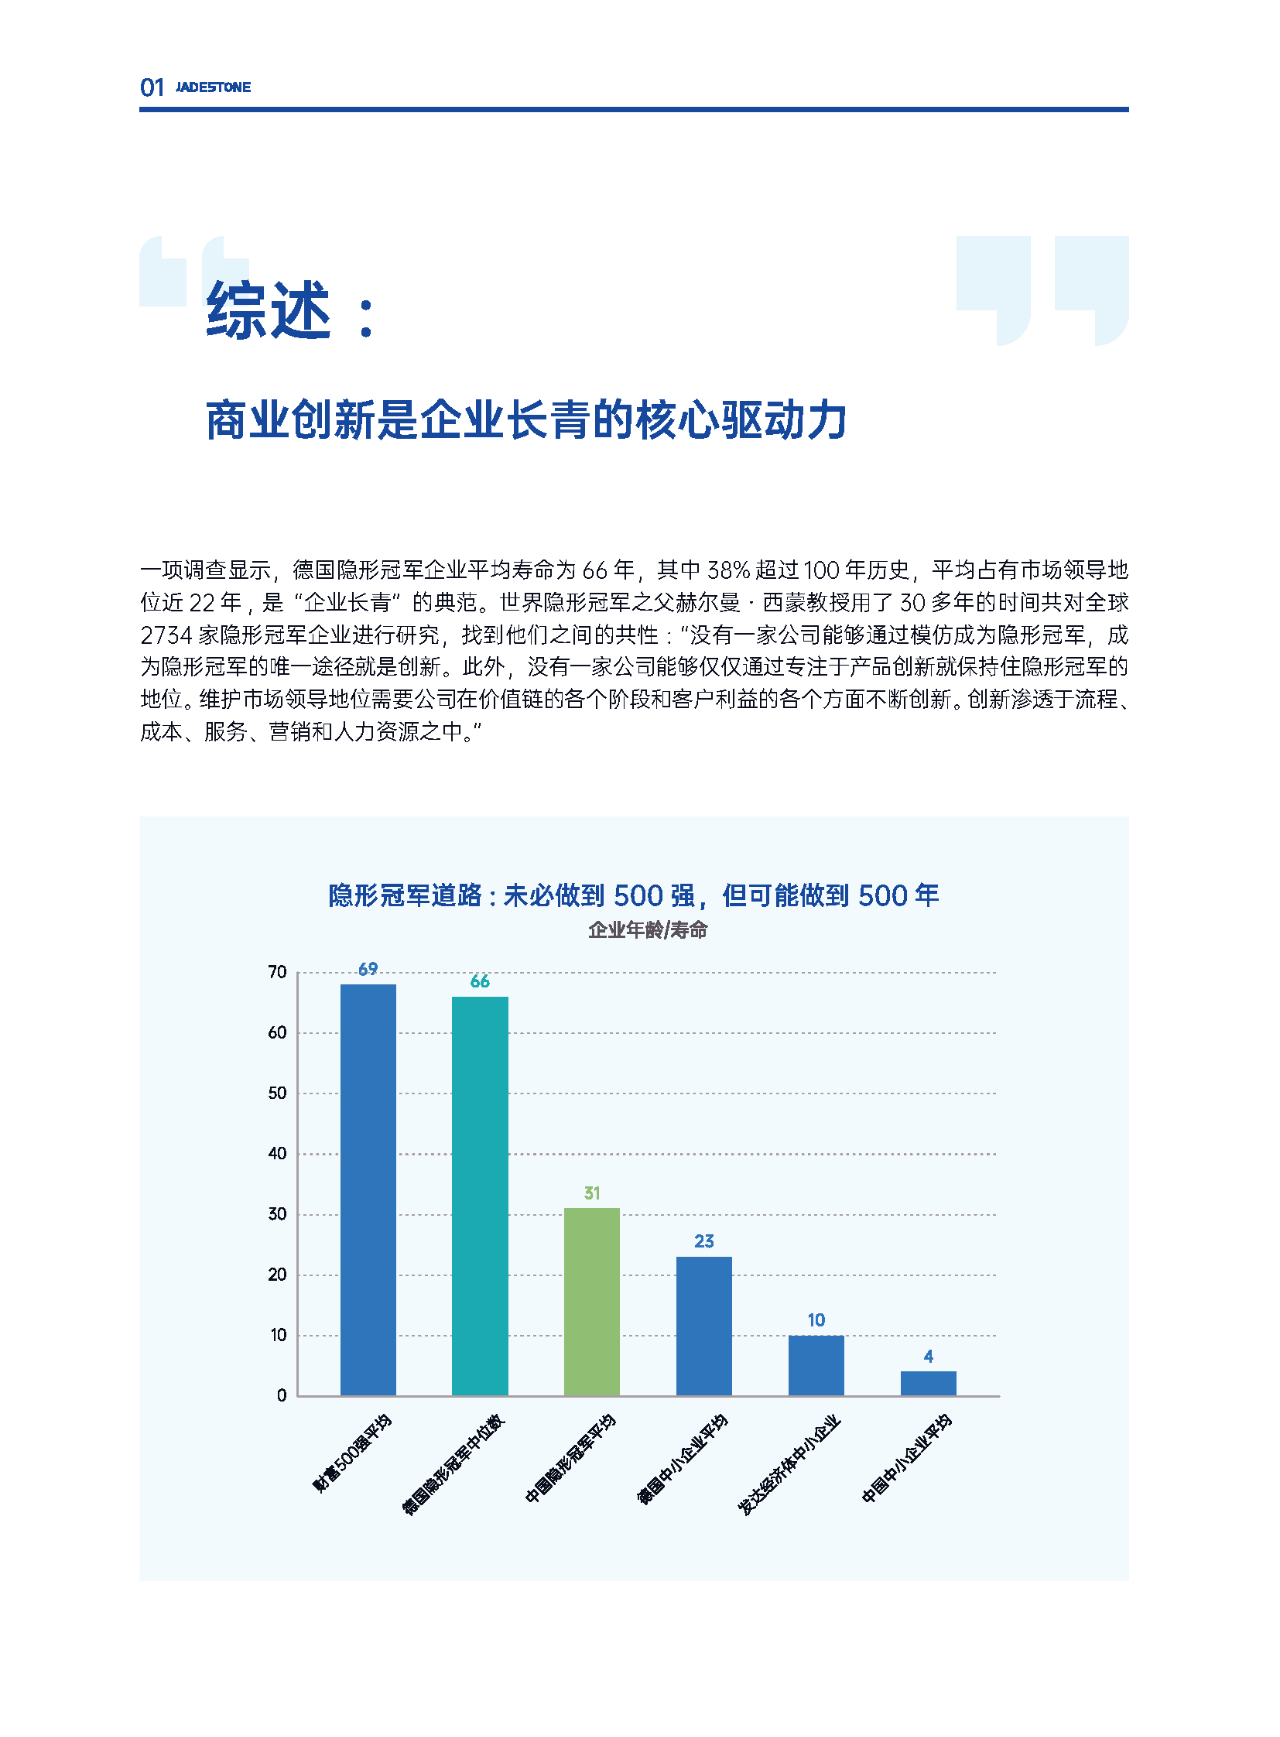 【商业创新】中国企业商业创新白皮书